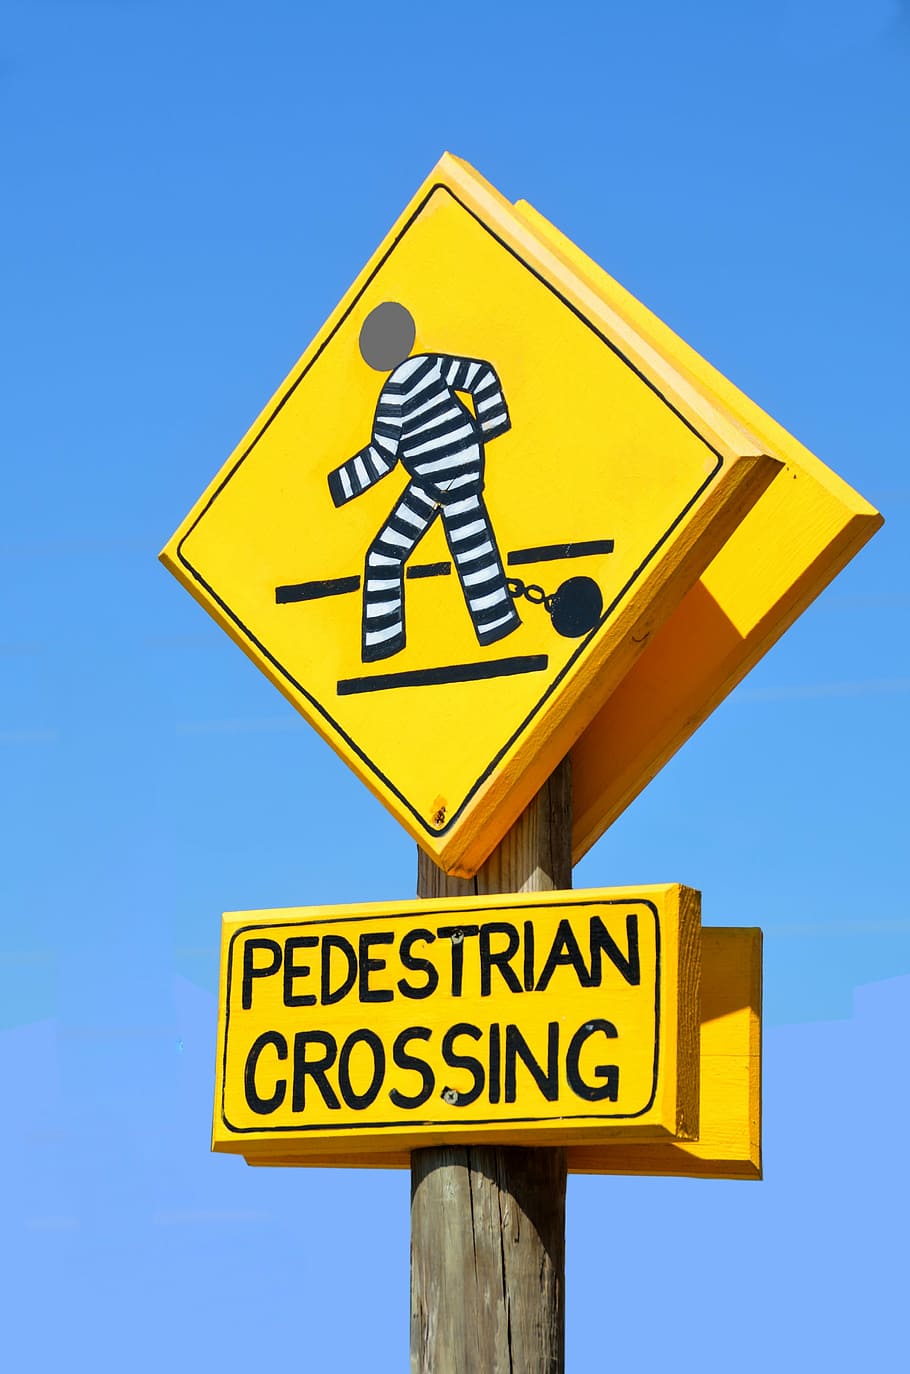 tanda penyeberangan pejalan kaki, di luar ruangan, simbol, peringatan, keselamatan, jalan, tanda, pejalan kaki, persimpangan, lalu lintas